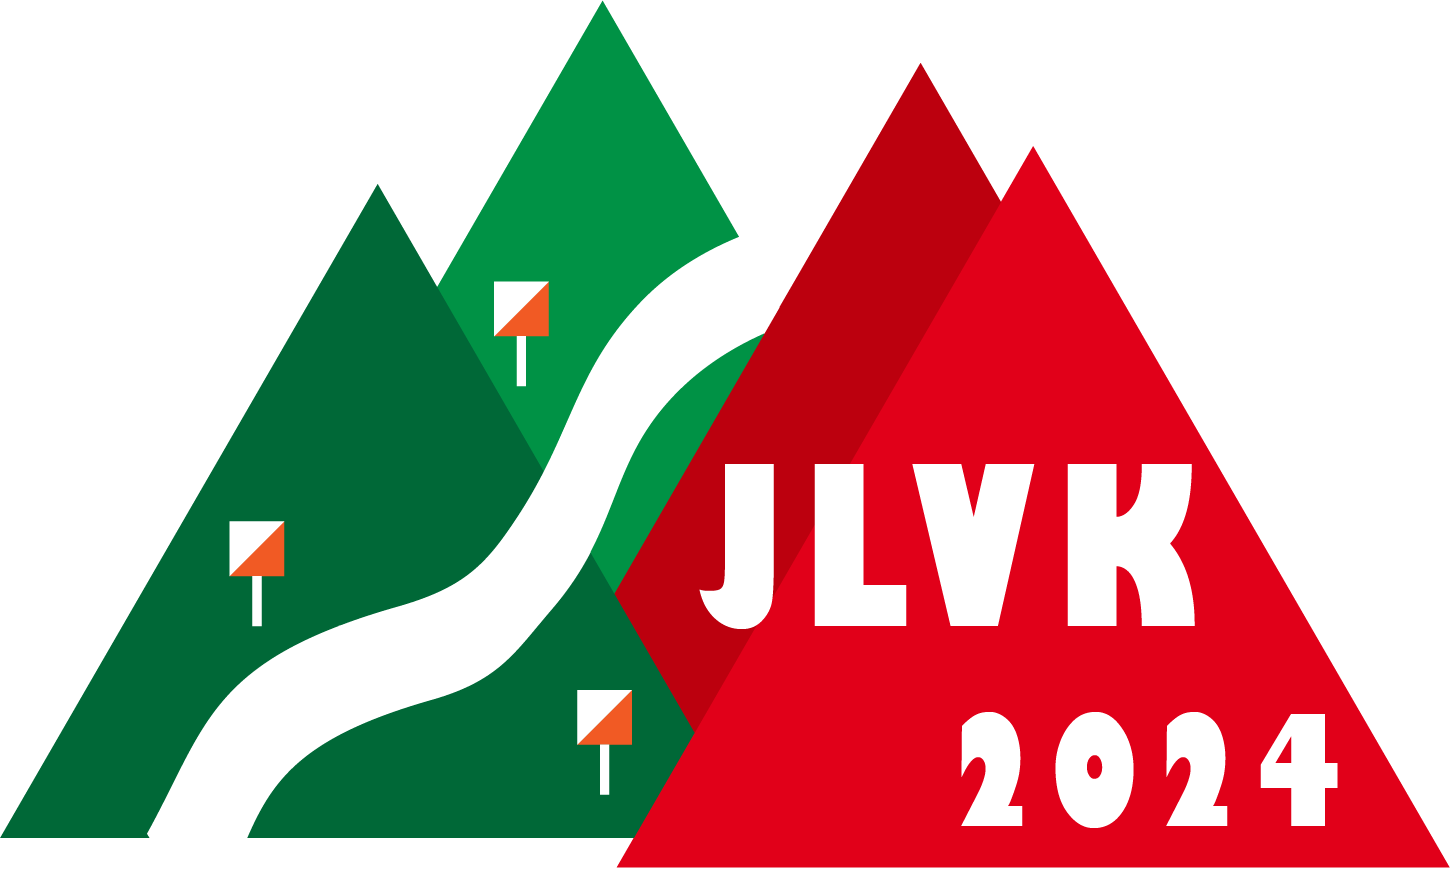 JLVK 2024